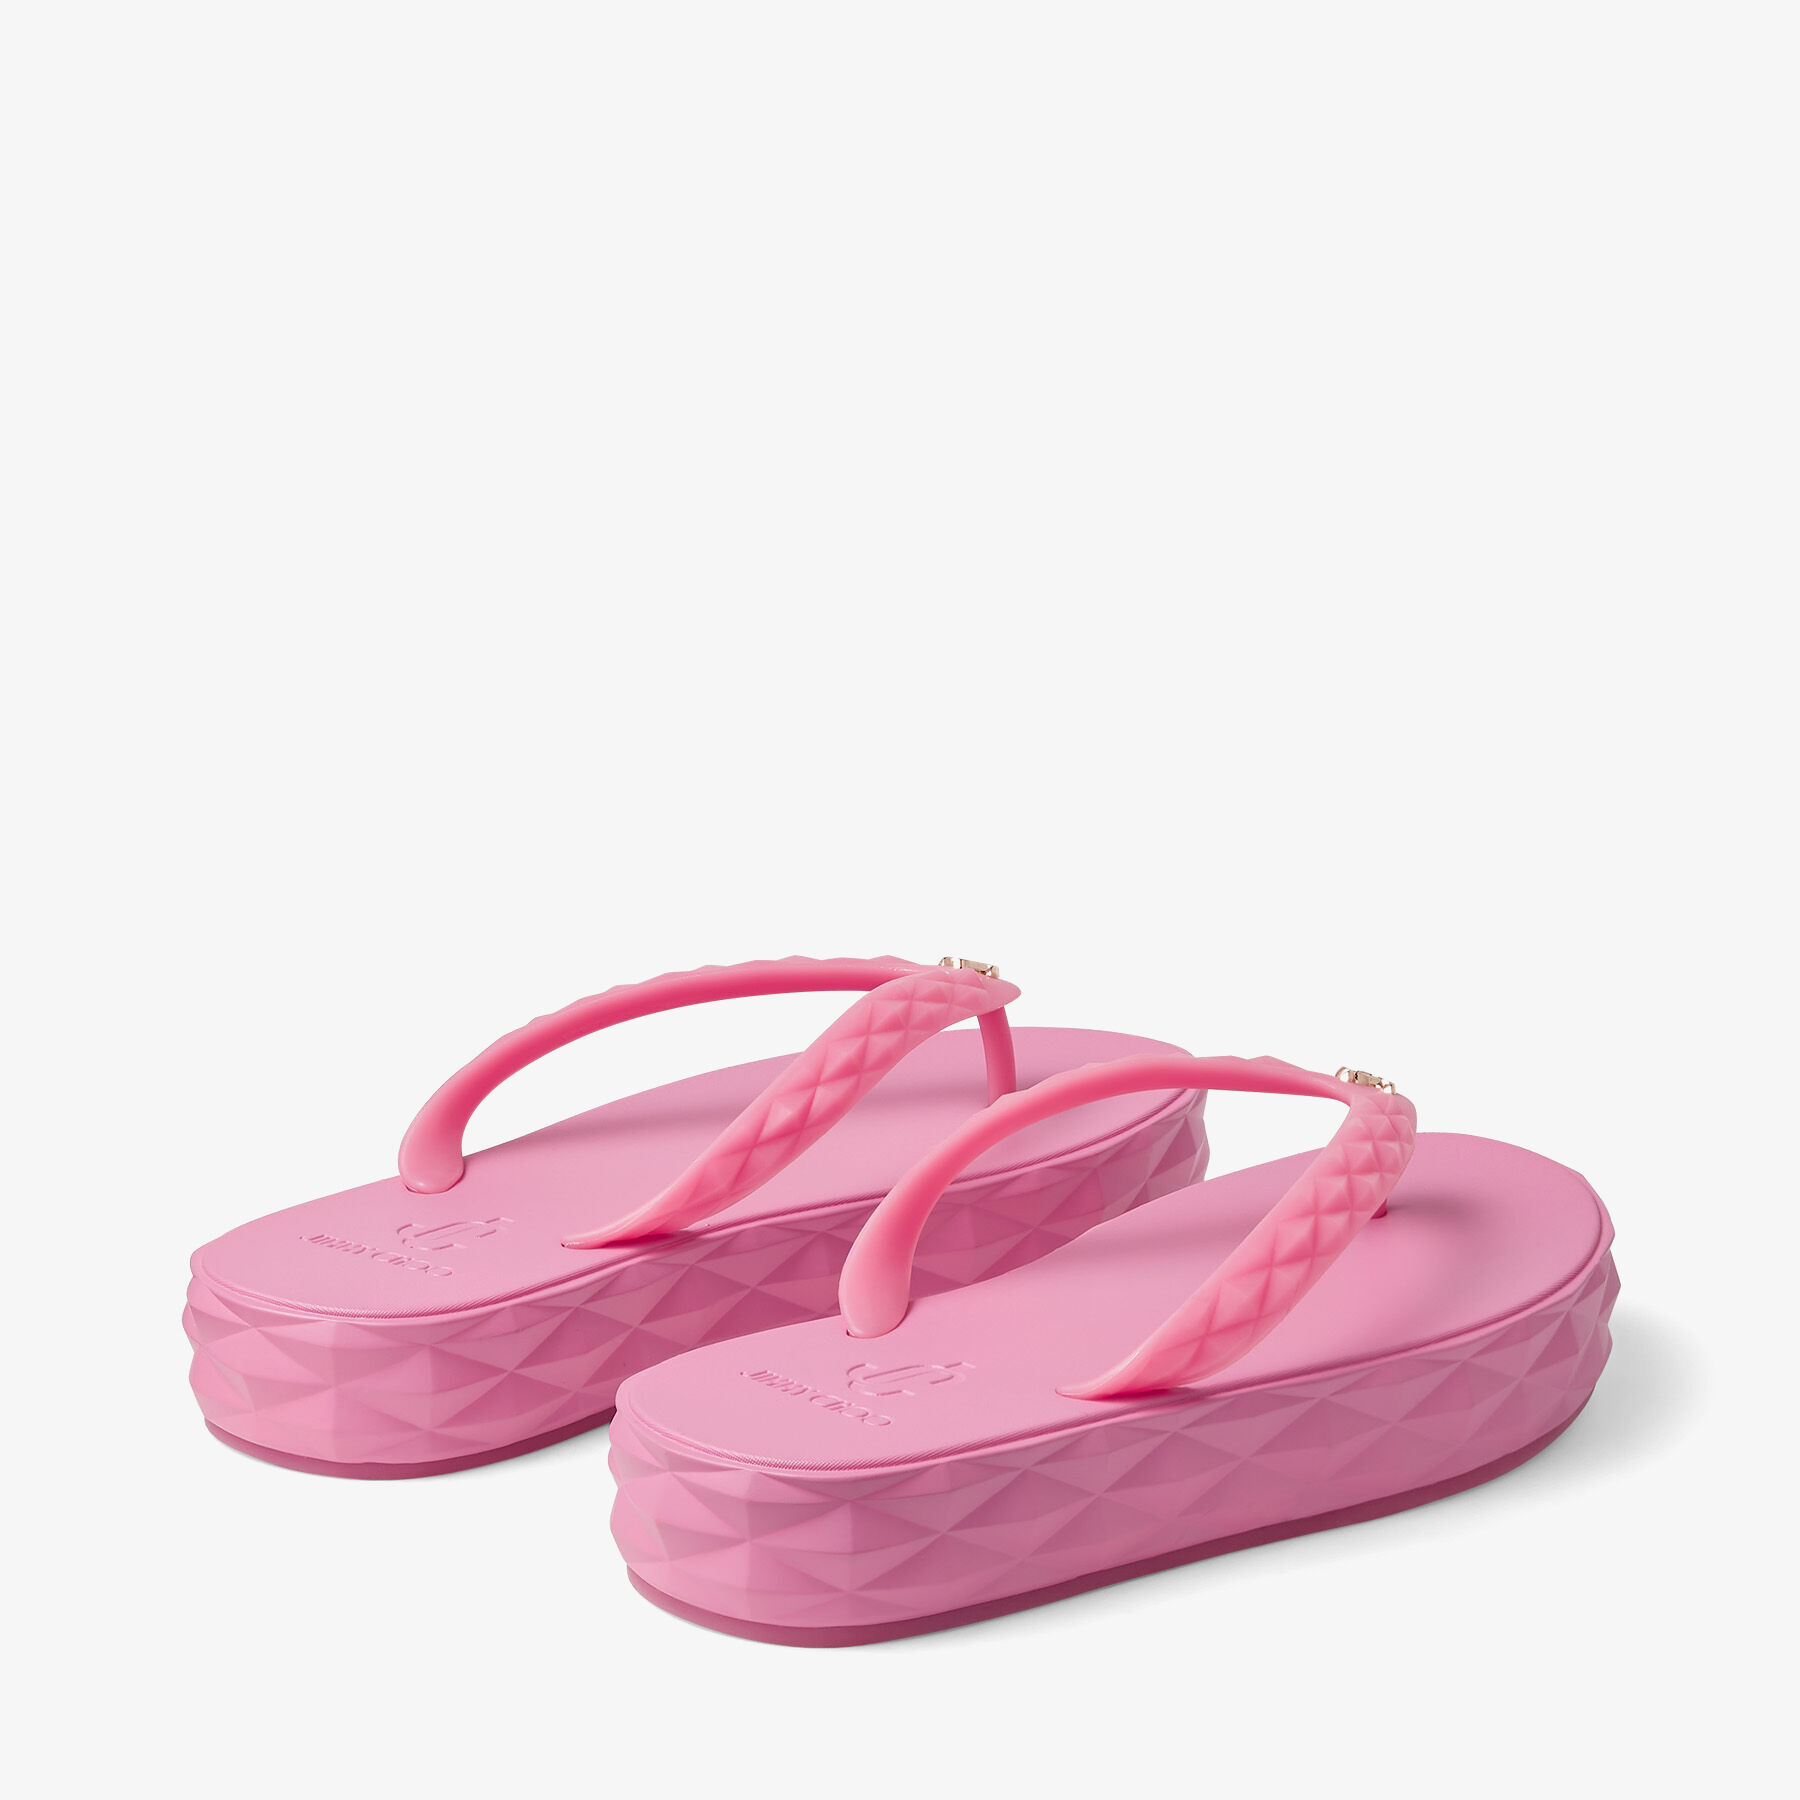 Candy Pink Rubber Flip-Flops | DIAMOND FLIP FLOP | Summer 2022 ...